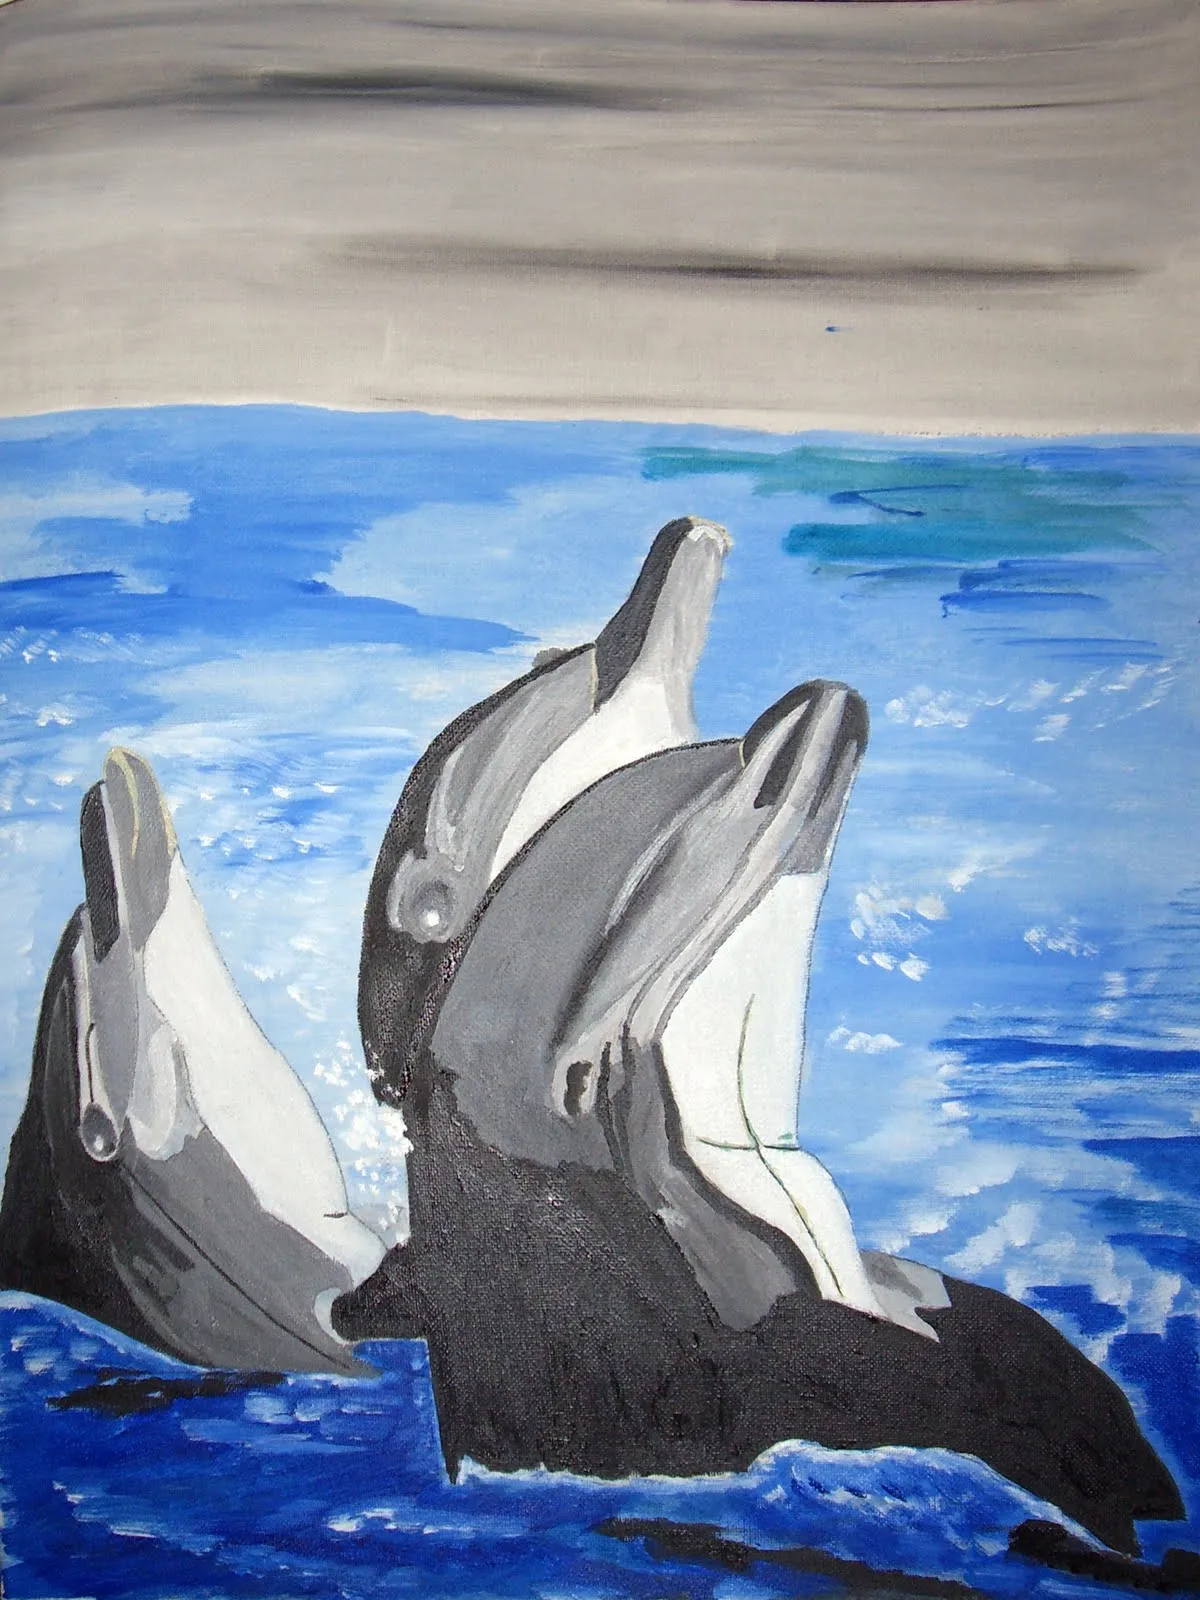 CUADROS DE JUAN: Delfines, 2010